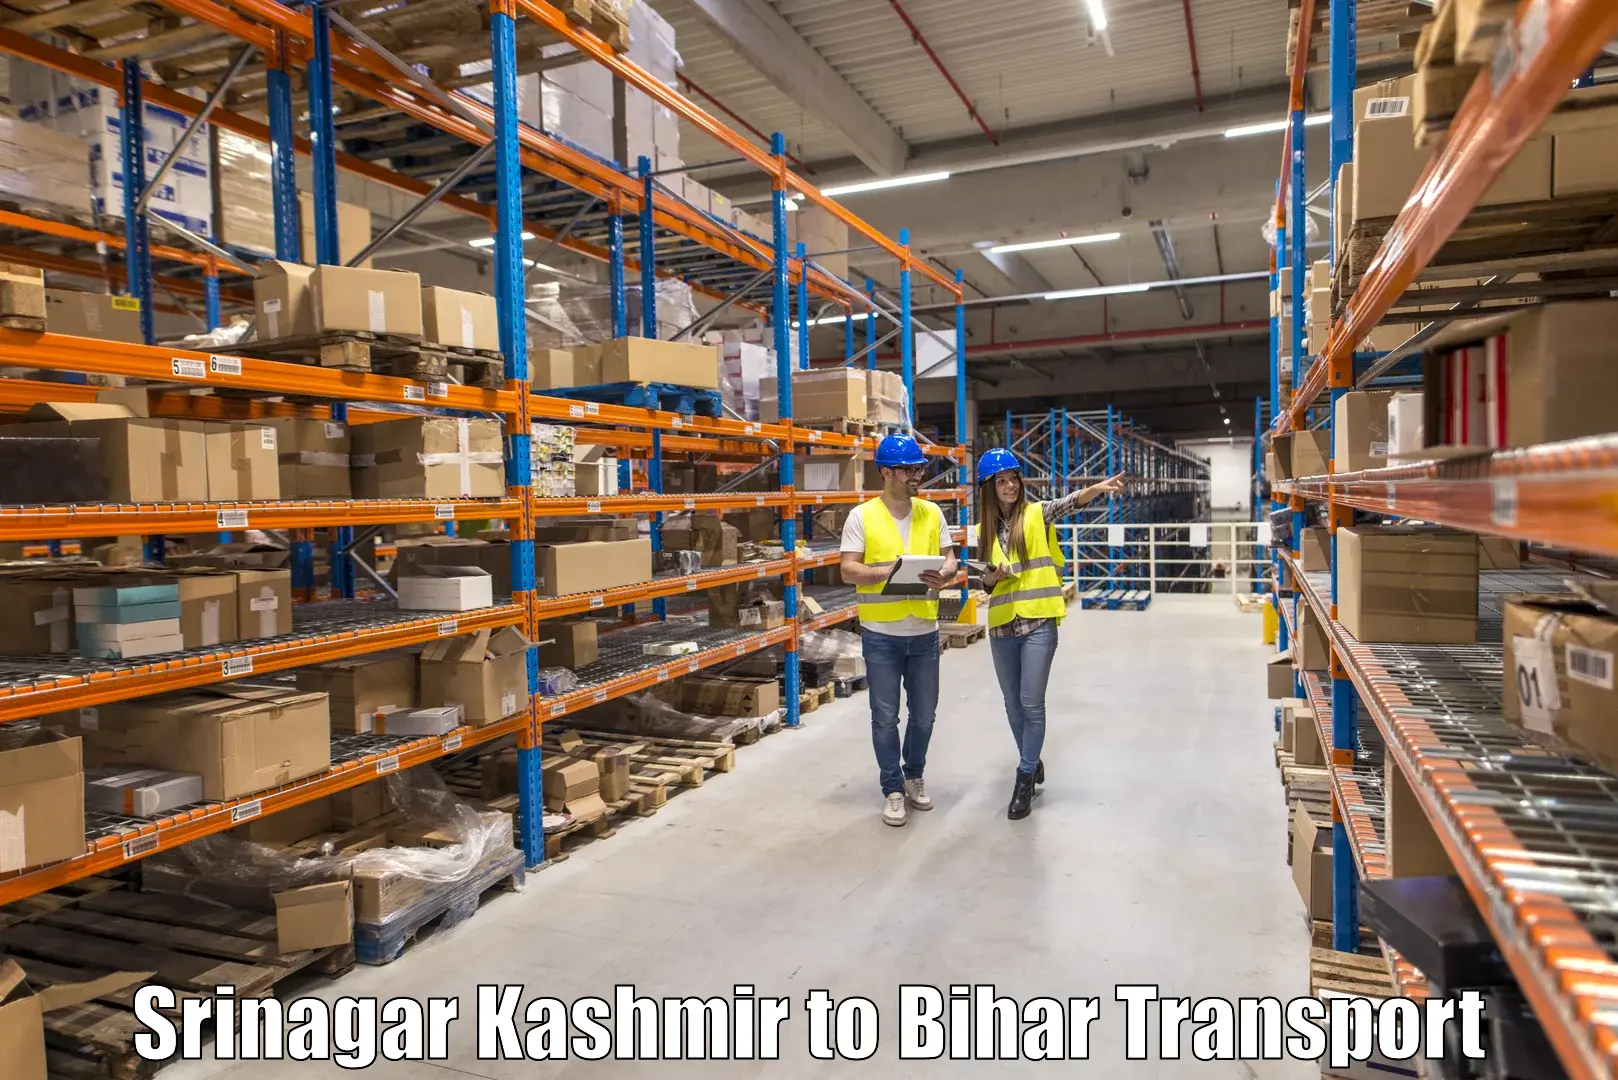 Commercial transport service Srinagar Kashmir to Malyabag